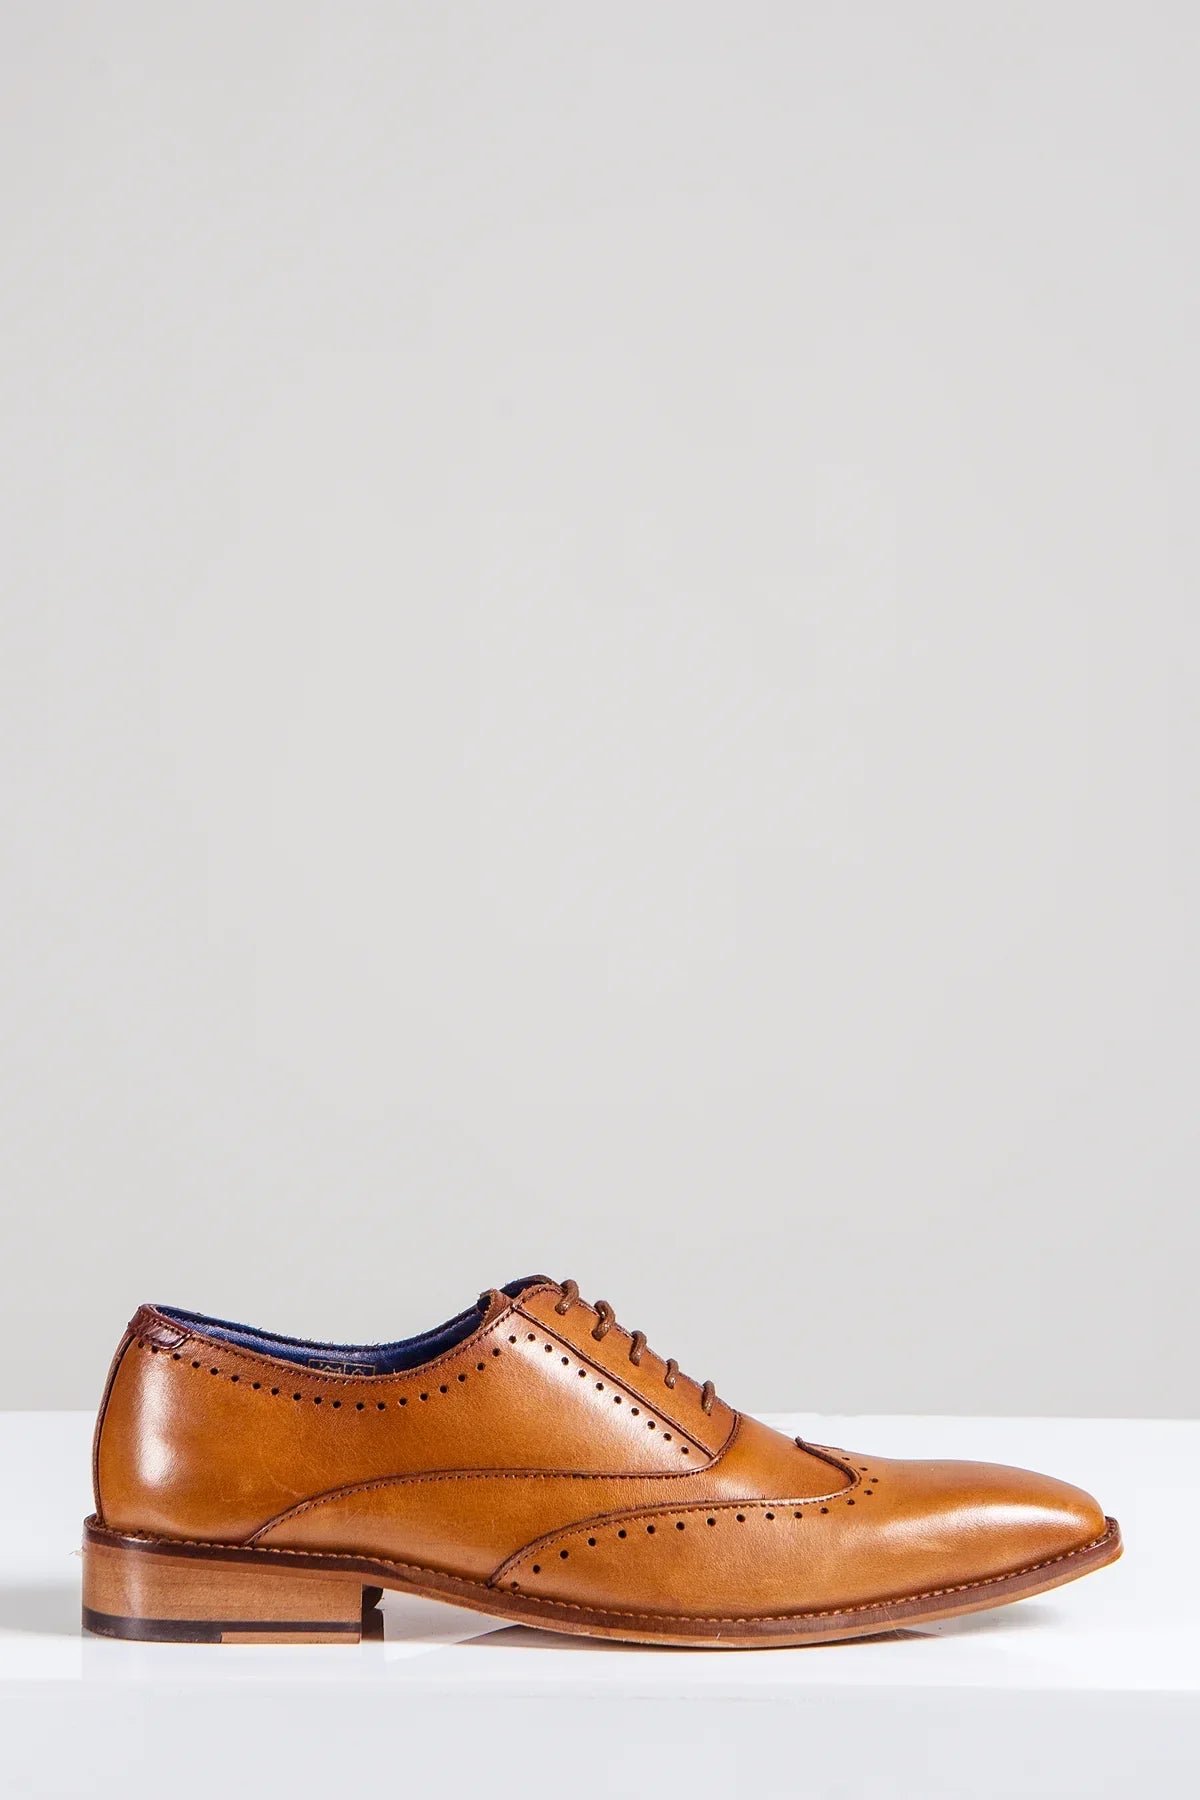 Hnedé kožené topánky, Marc Darcy Carson, Wingtip brogue